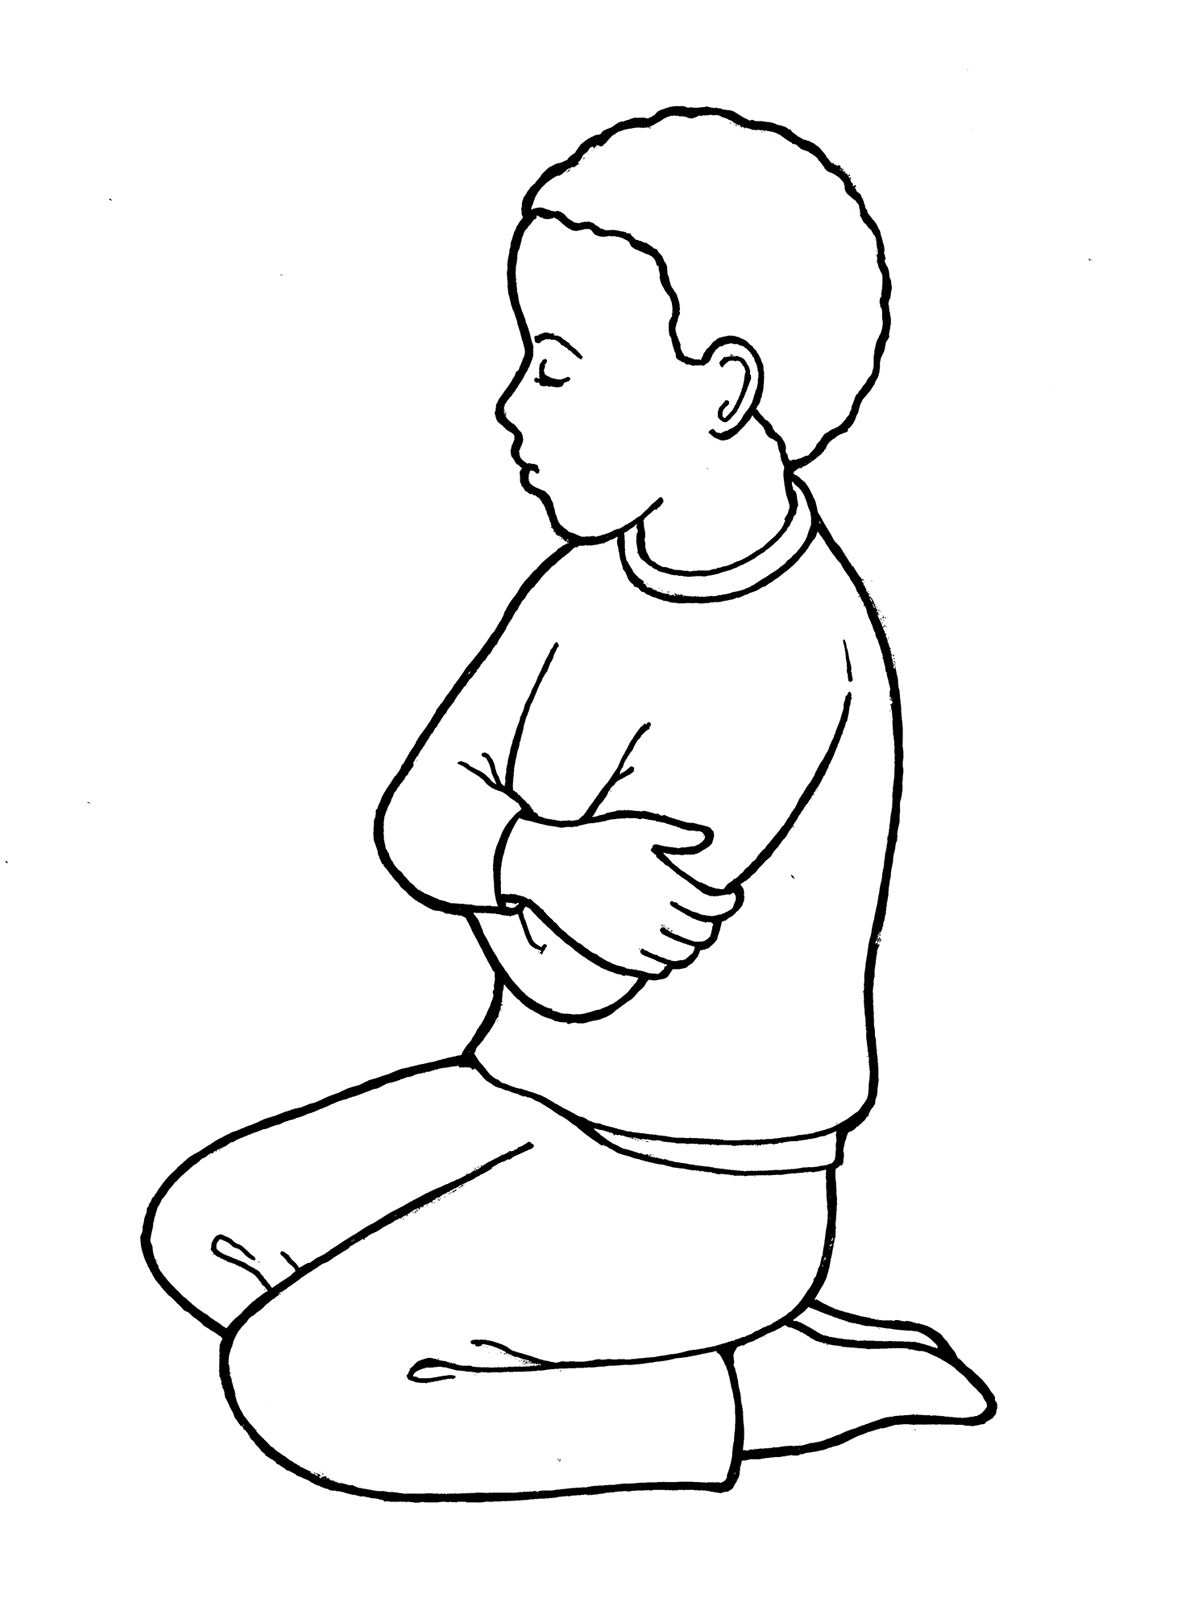 Child Praying Coloring Page at Free printable